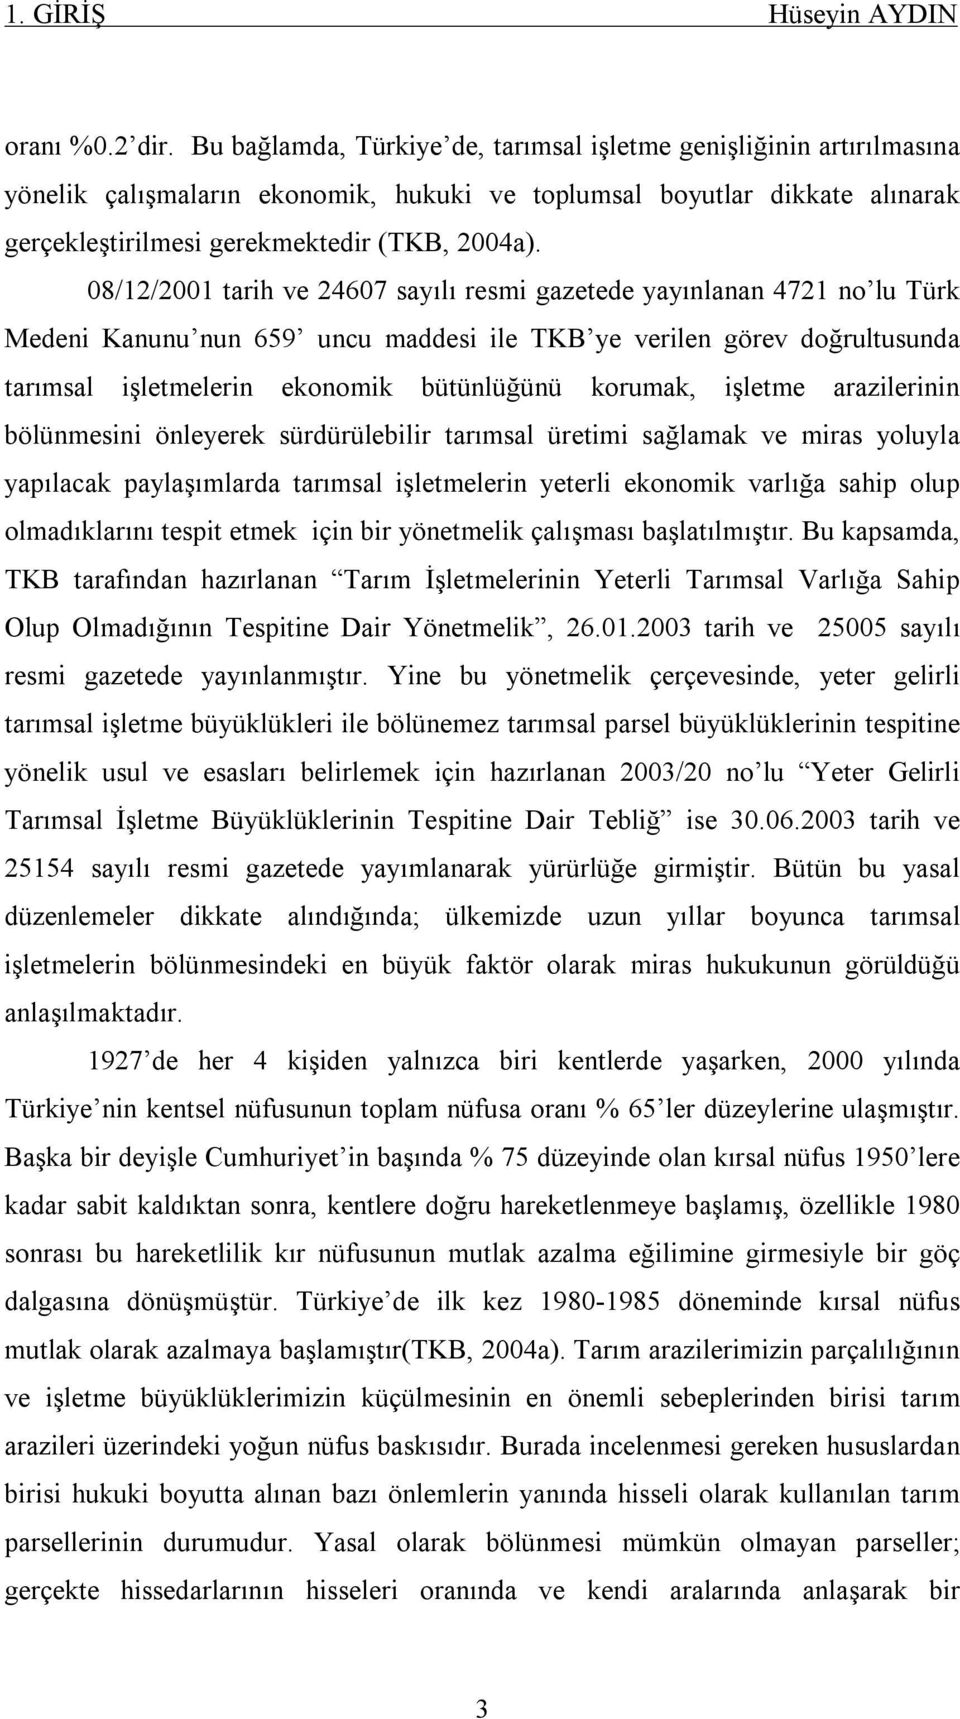 08/12/2001 tarih ve 24607 sayılı resmi gazetede yayınlanan 4721 no lu Türk Medeni Kanunu nun 659 uncu maddesi ile TKB ye verilen görev doğrultusunda tarımsal işletmelerin ekonomik bütünlüğünü